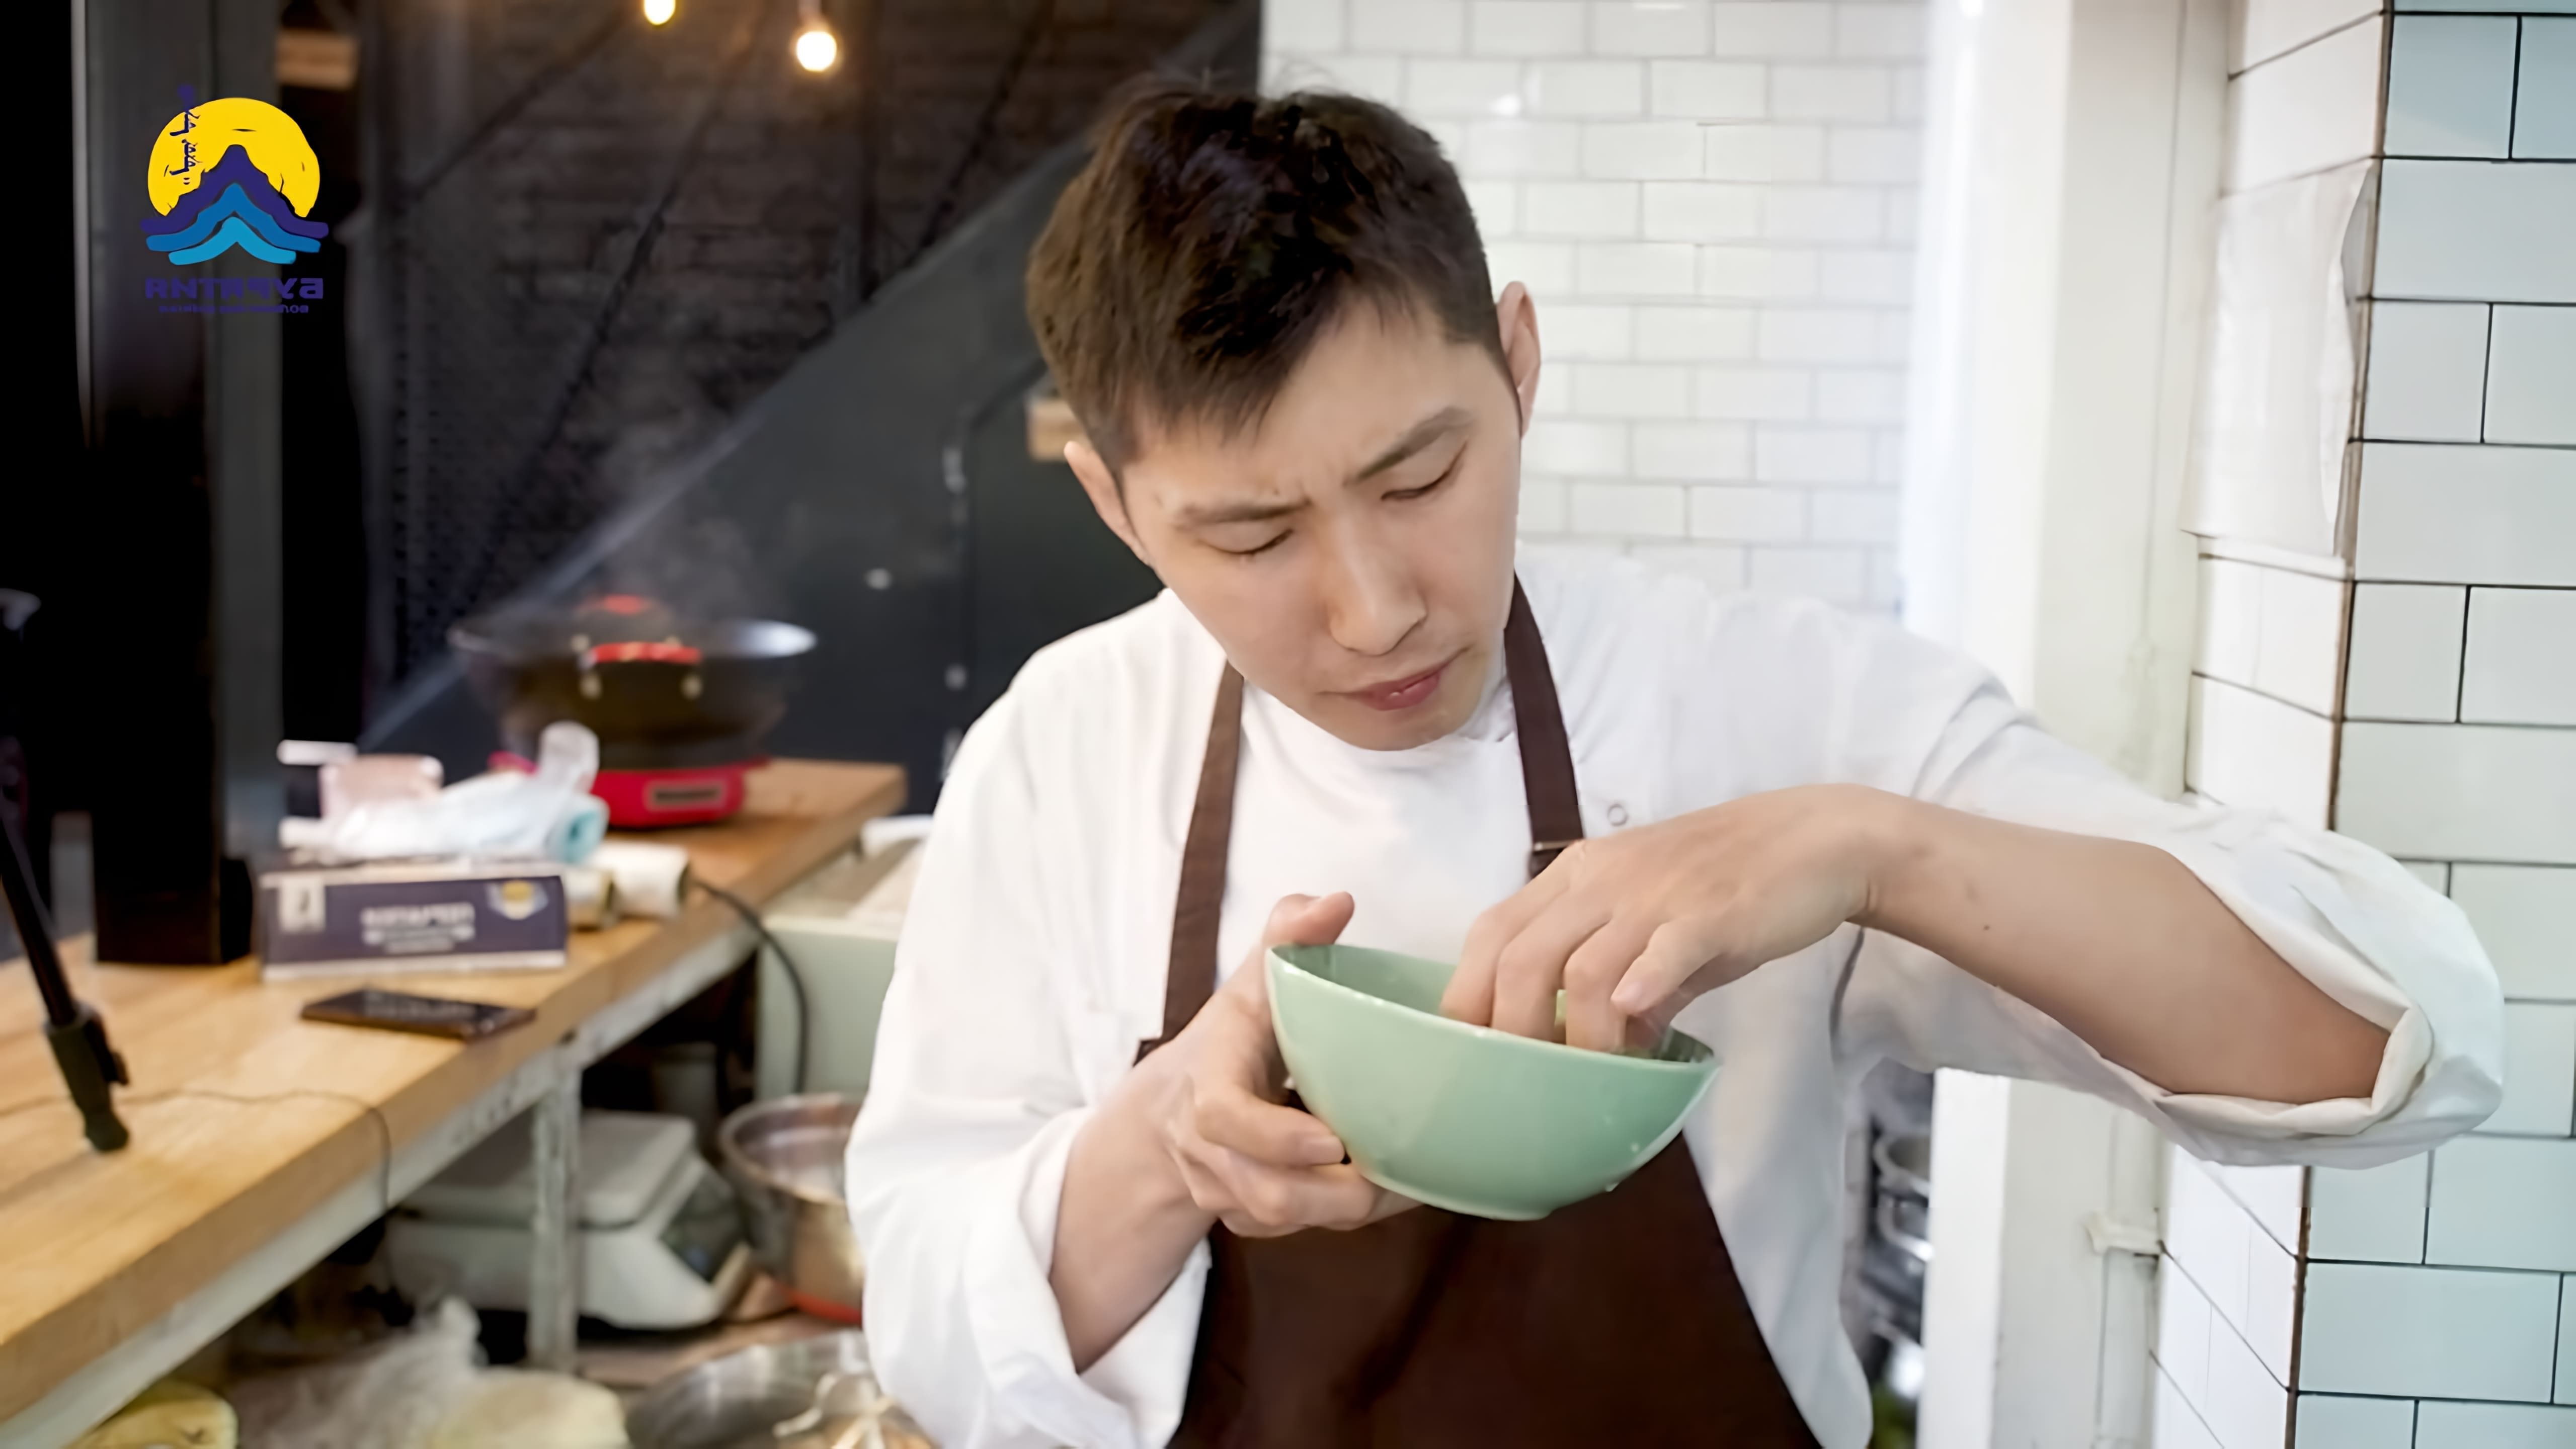 В этом видео шеф-повар Андрей Маханов показывает, как приготовить буузы - национальное блюдо бурятской кухни